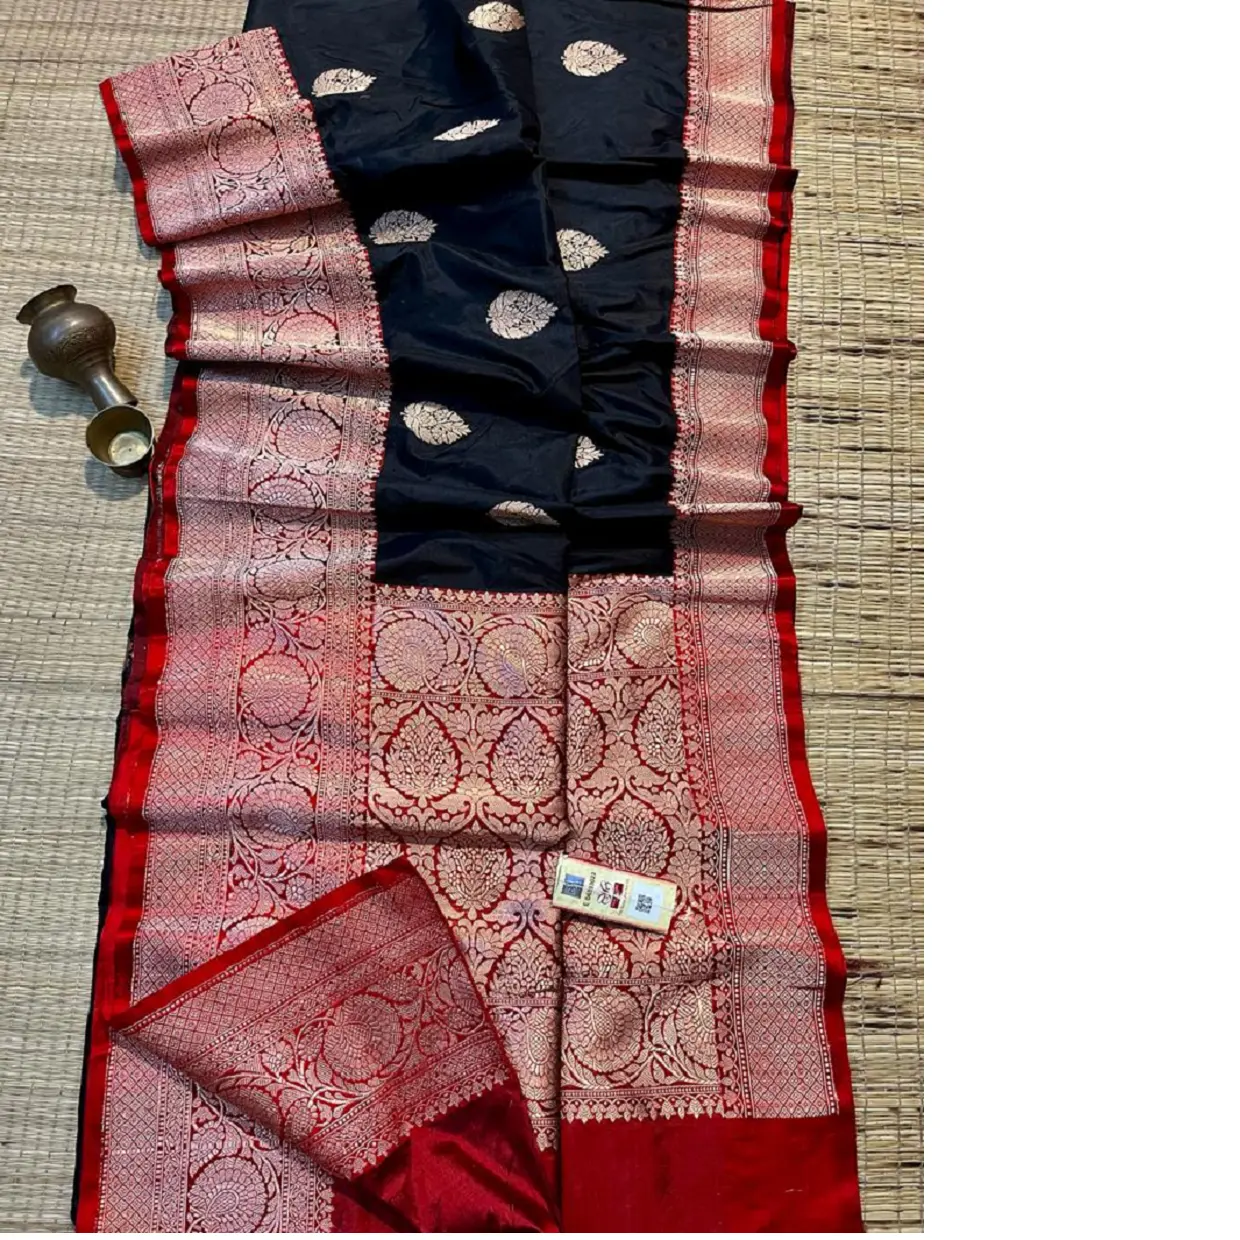 Maßge schneiderte Saris aus reiner Brokat seide in Schwarz und Rot, ideal für Bekleidungs designer und Modegeschäfte zum Wiederverkauf